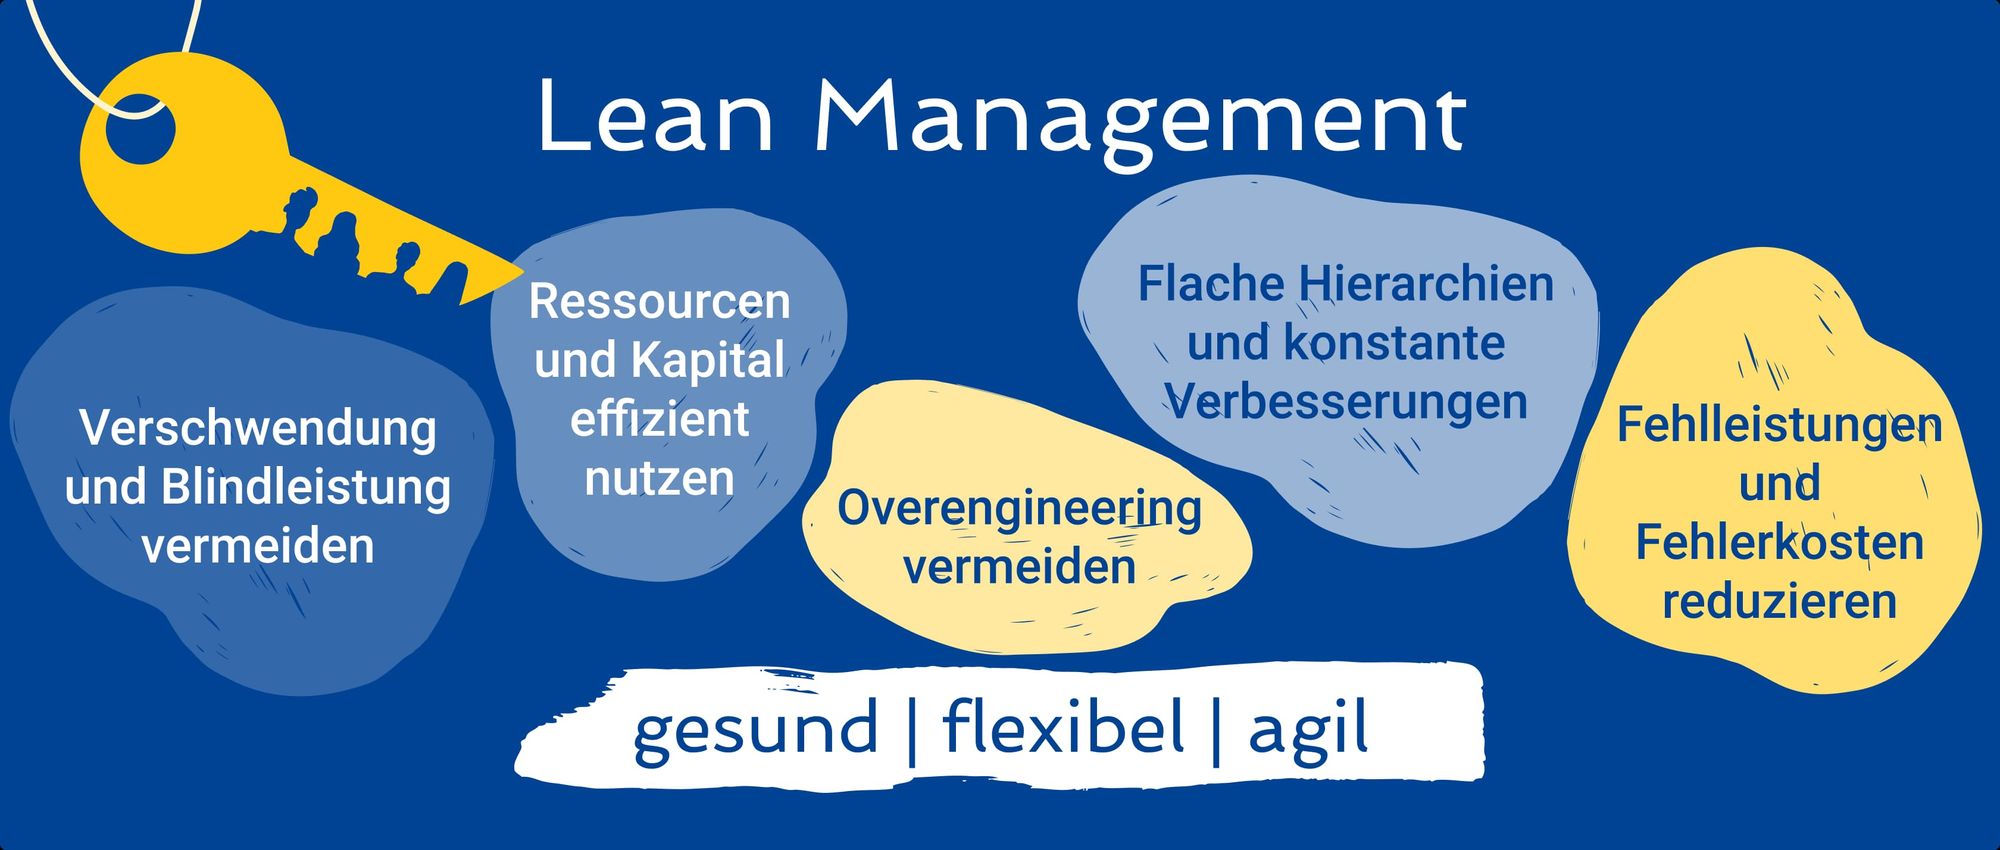 Lean Management Methoden - Wo tun sich KMU oft noch schwer?